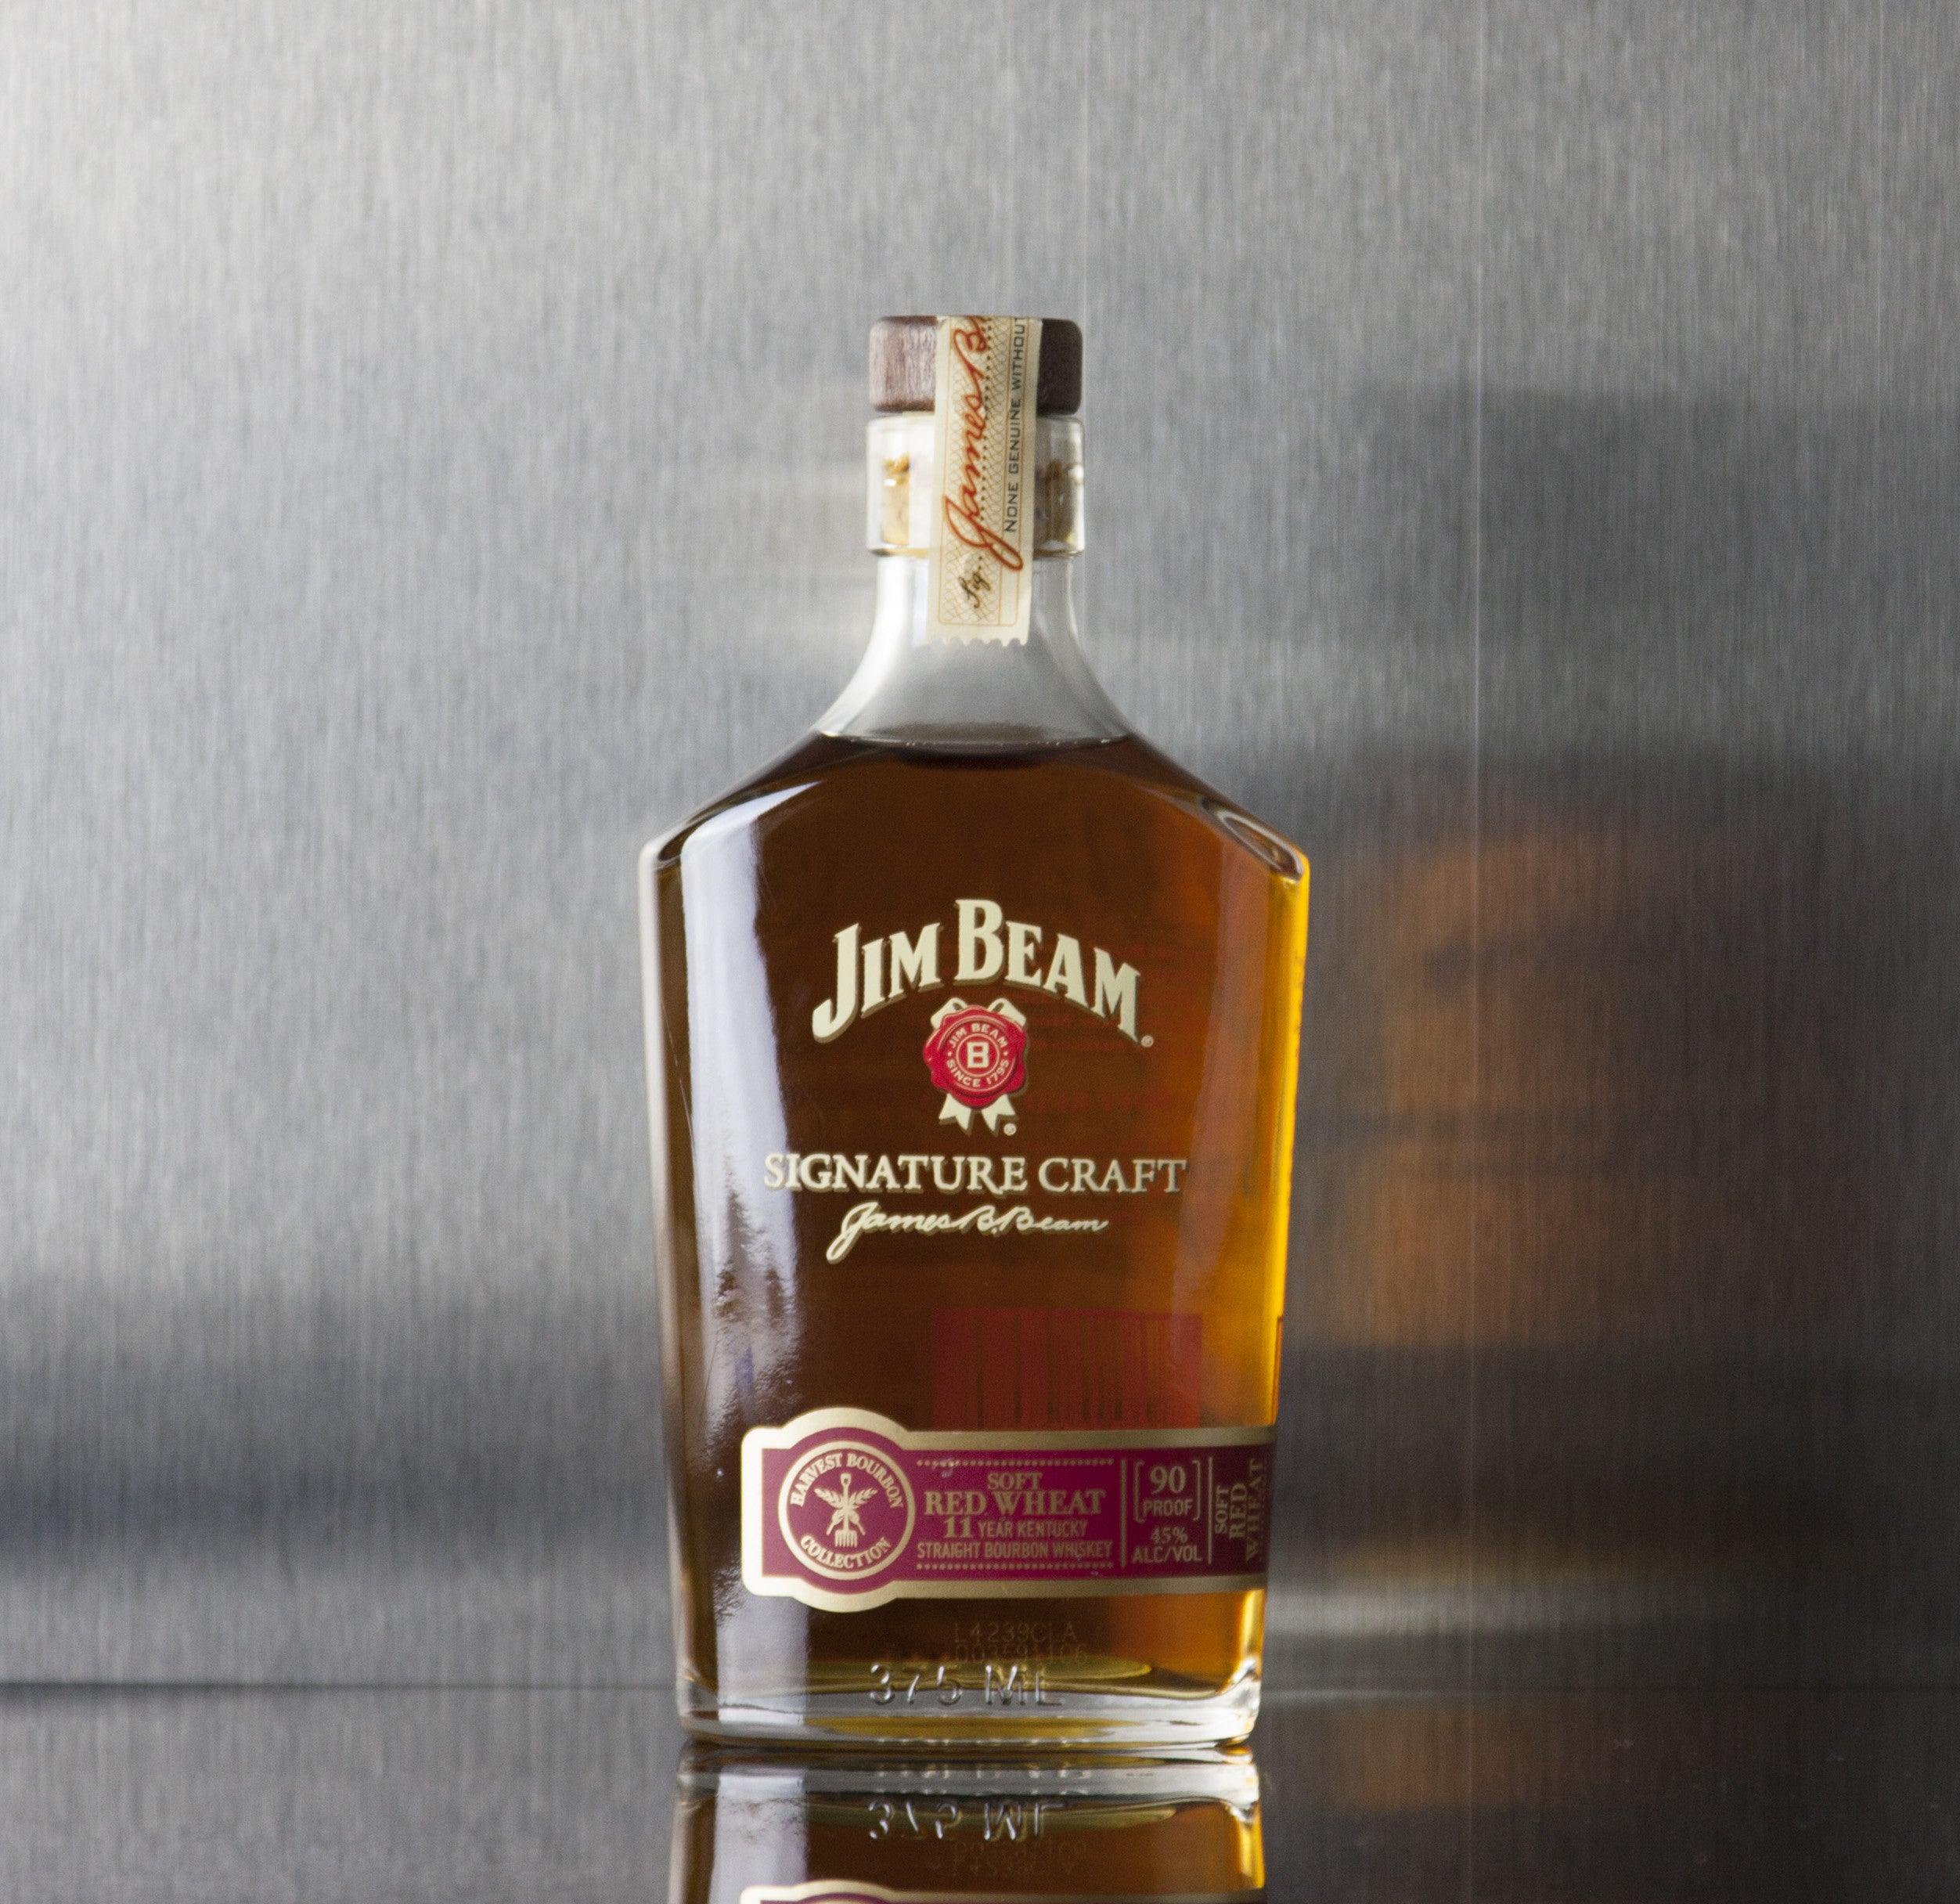 Jim Beam Signature Craft 11 Year Soft Red Wheat Bourbon 375 ml